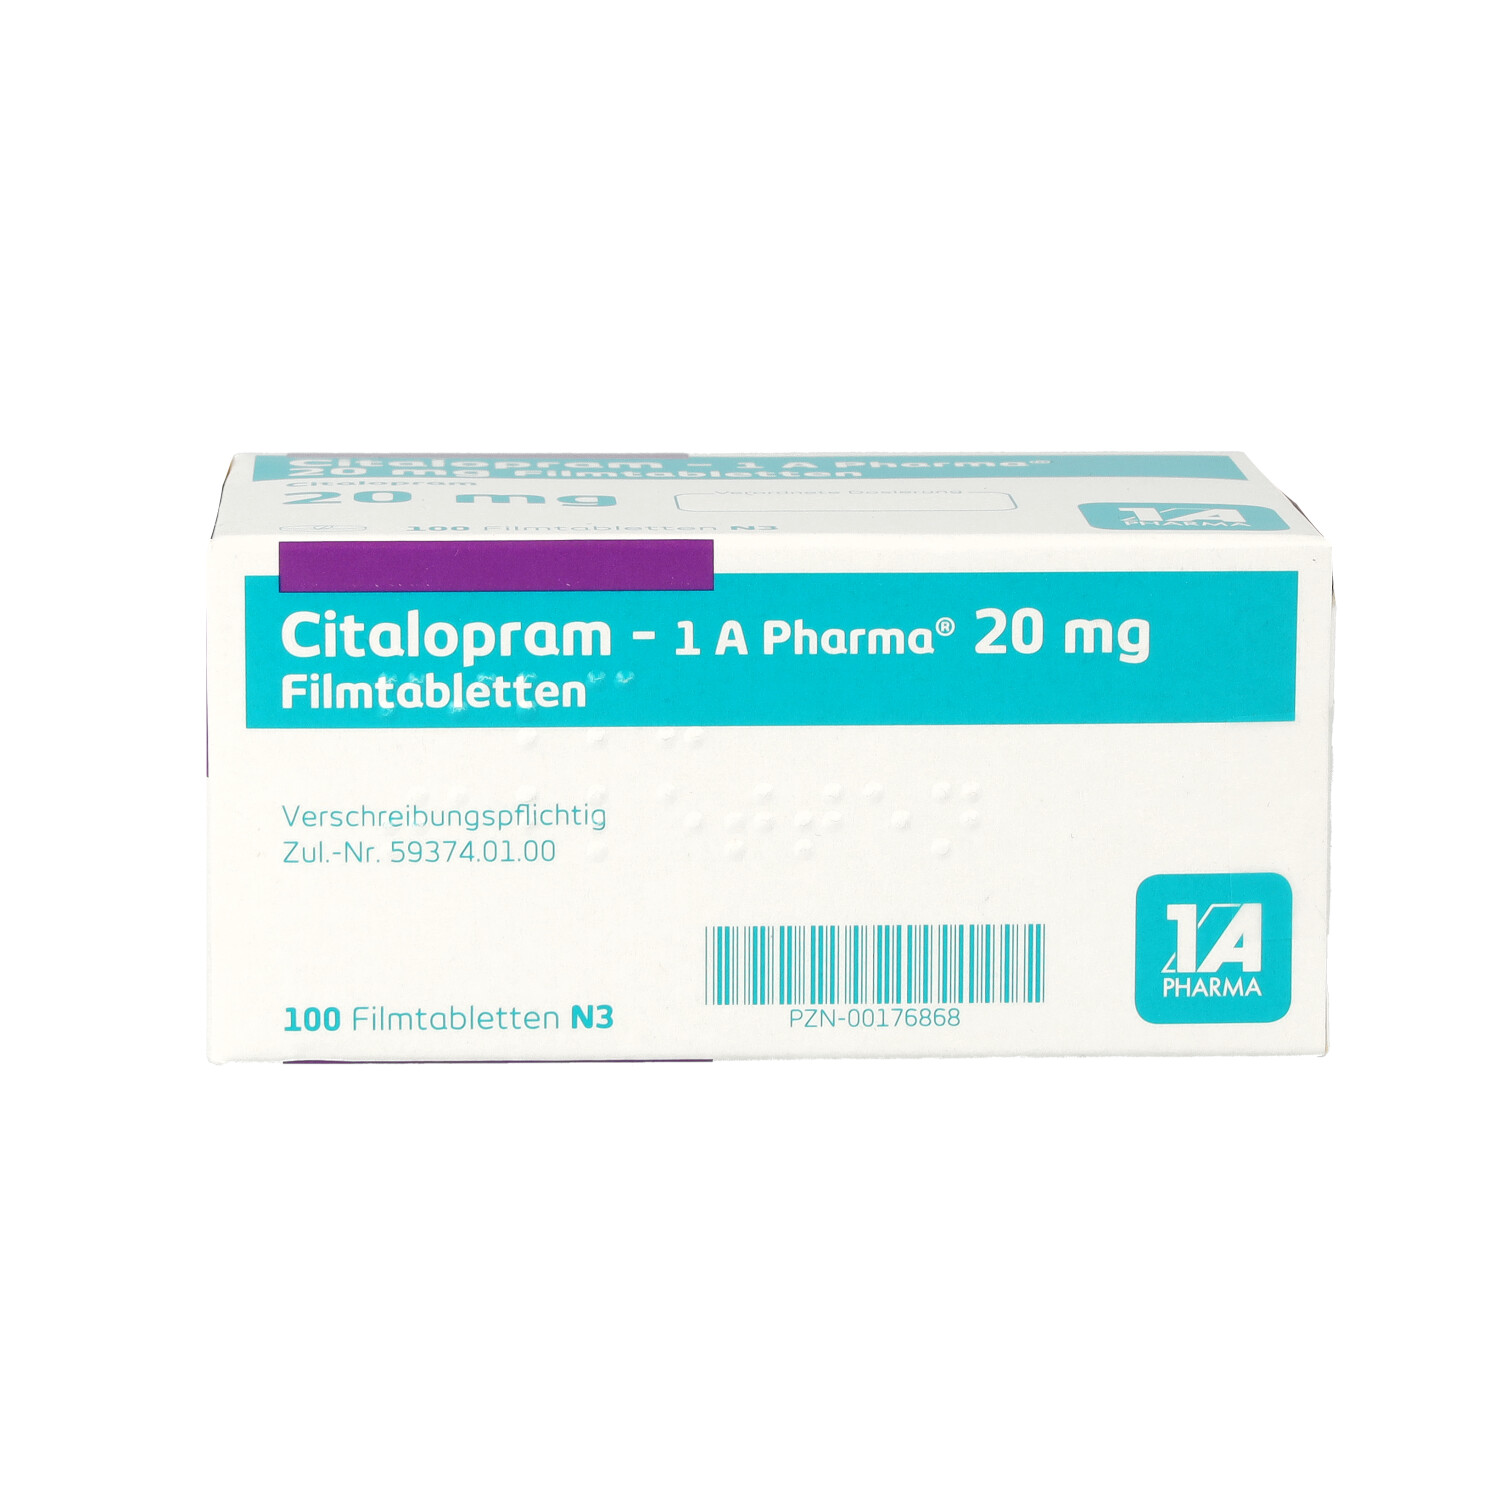 CITALOPRAM-1A Pharma 20 mg Filmtabletten